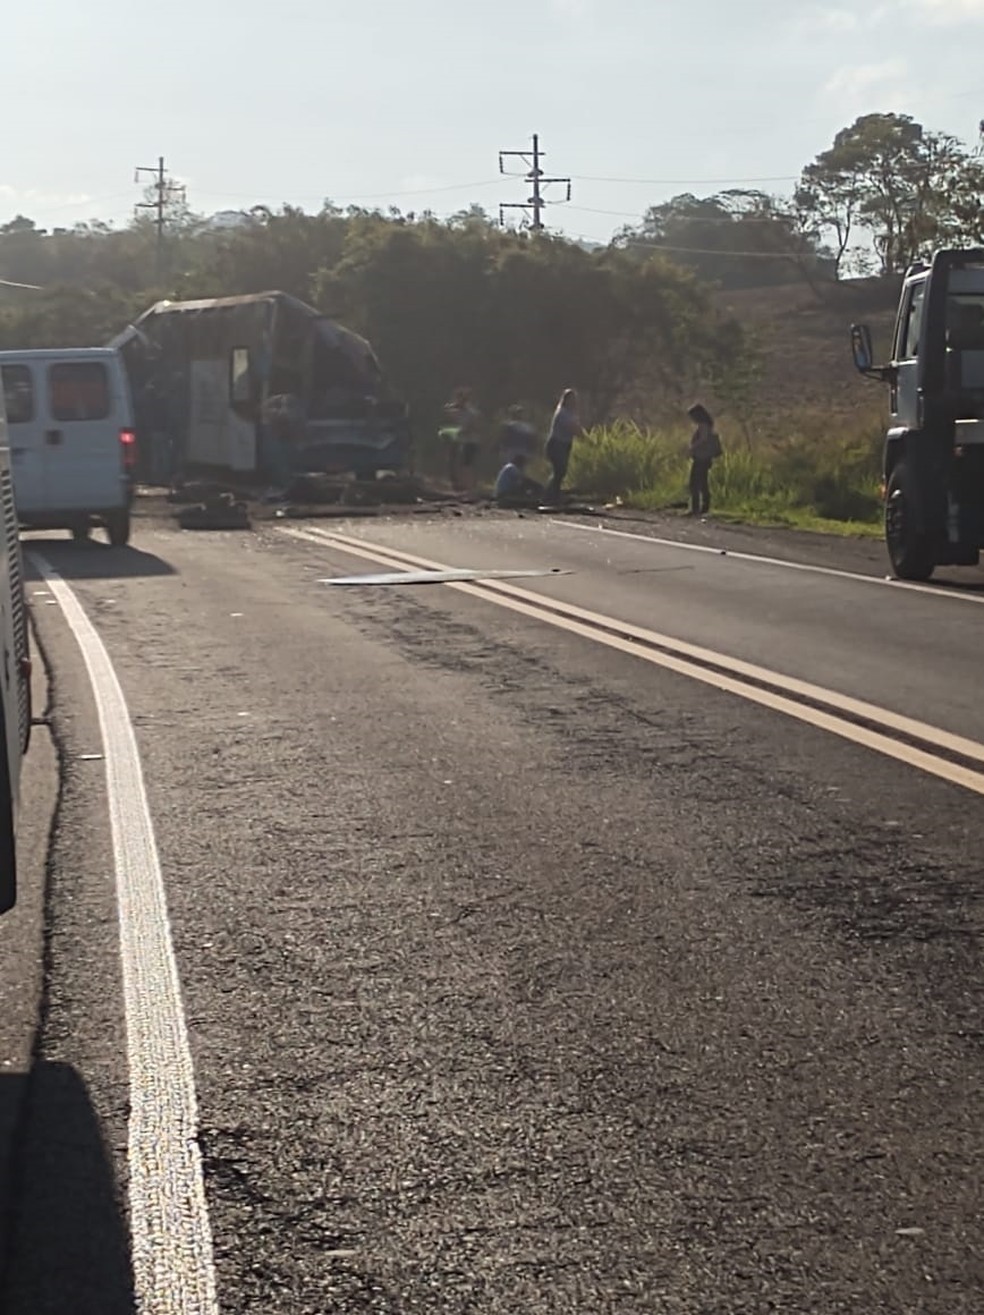 Acidente provoca mortes em rodovia entre Taguaí e Taquarituba (SP) — Foto: Arquivo pessoal